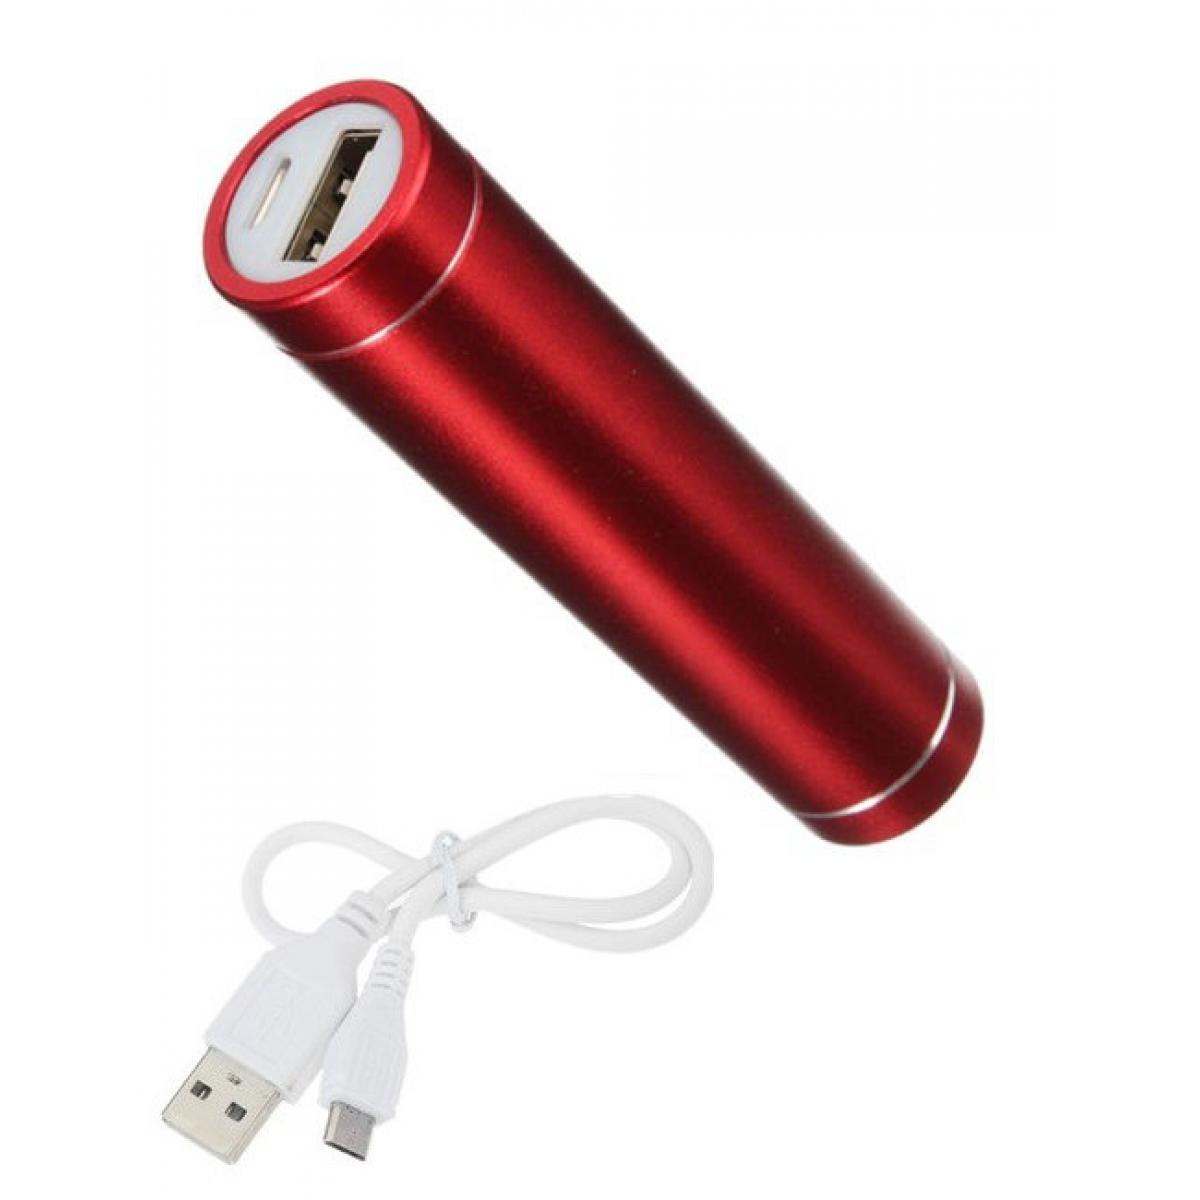 Shot - Batterie Chargeur Externe pour XIAOMI Mi Note 10 Pro Power Bank 2600mAh avec Cable USB/Mirco USB Secours Telephone (ROUGE) - Chargeur secteur téléphone